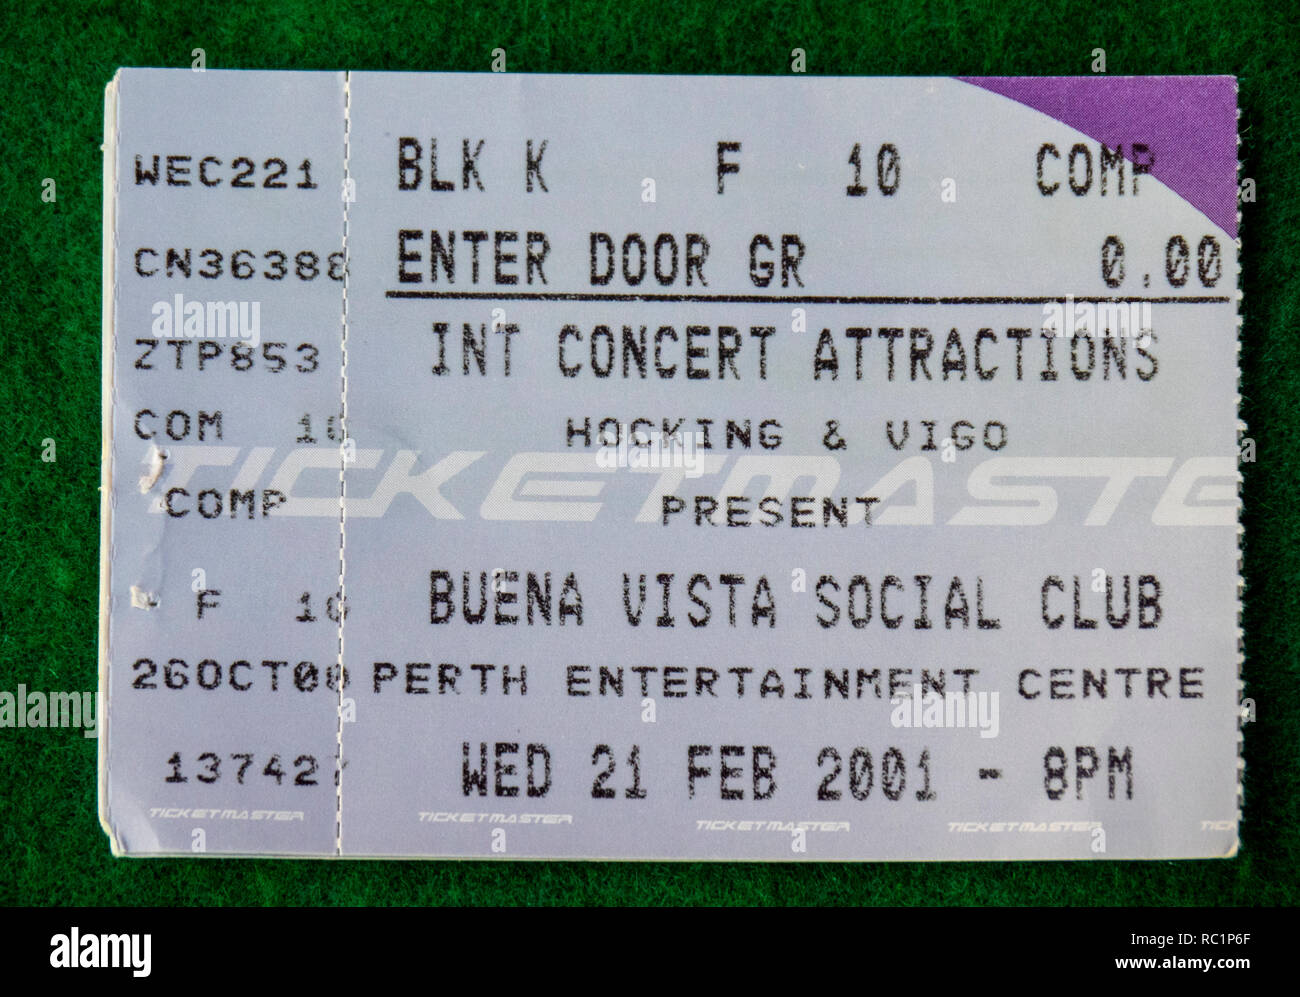 Ticket for Buena Vista Social Club concert at Perth Entertainment Centre in 2001 WA Australia. Stock Photo